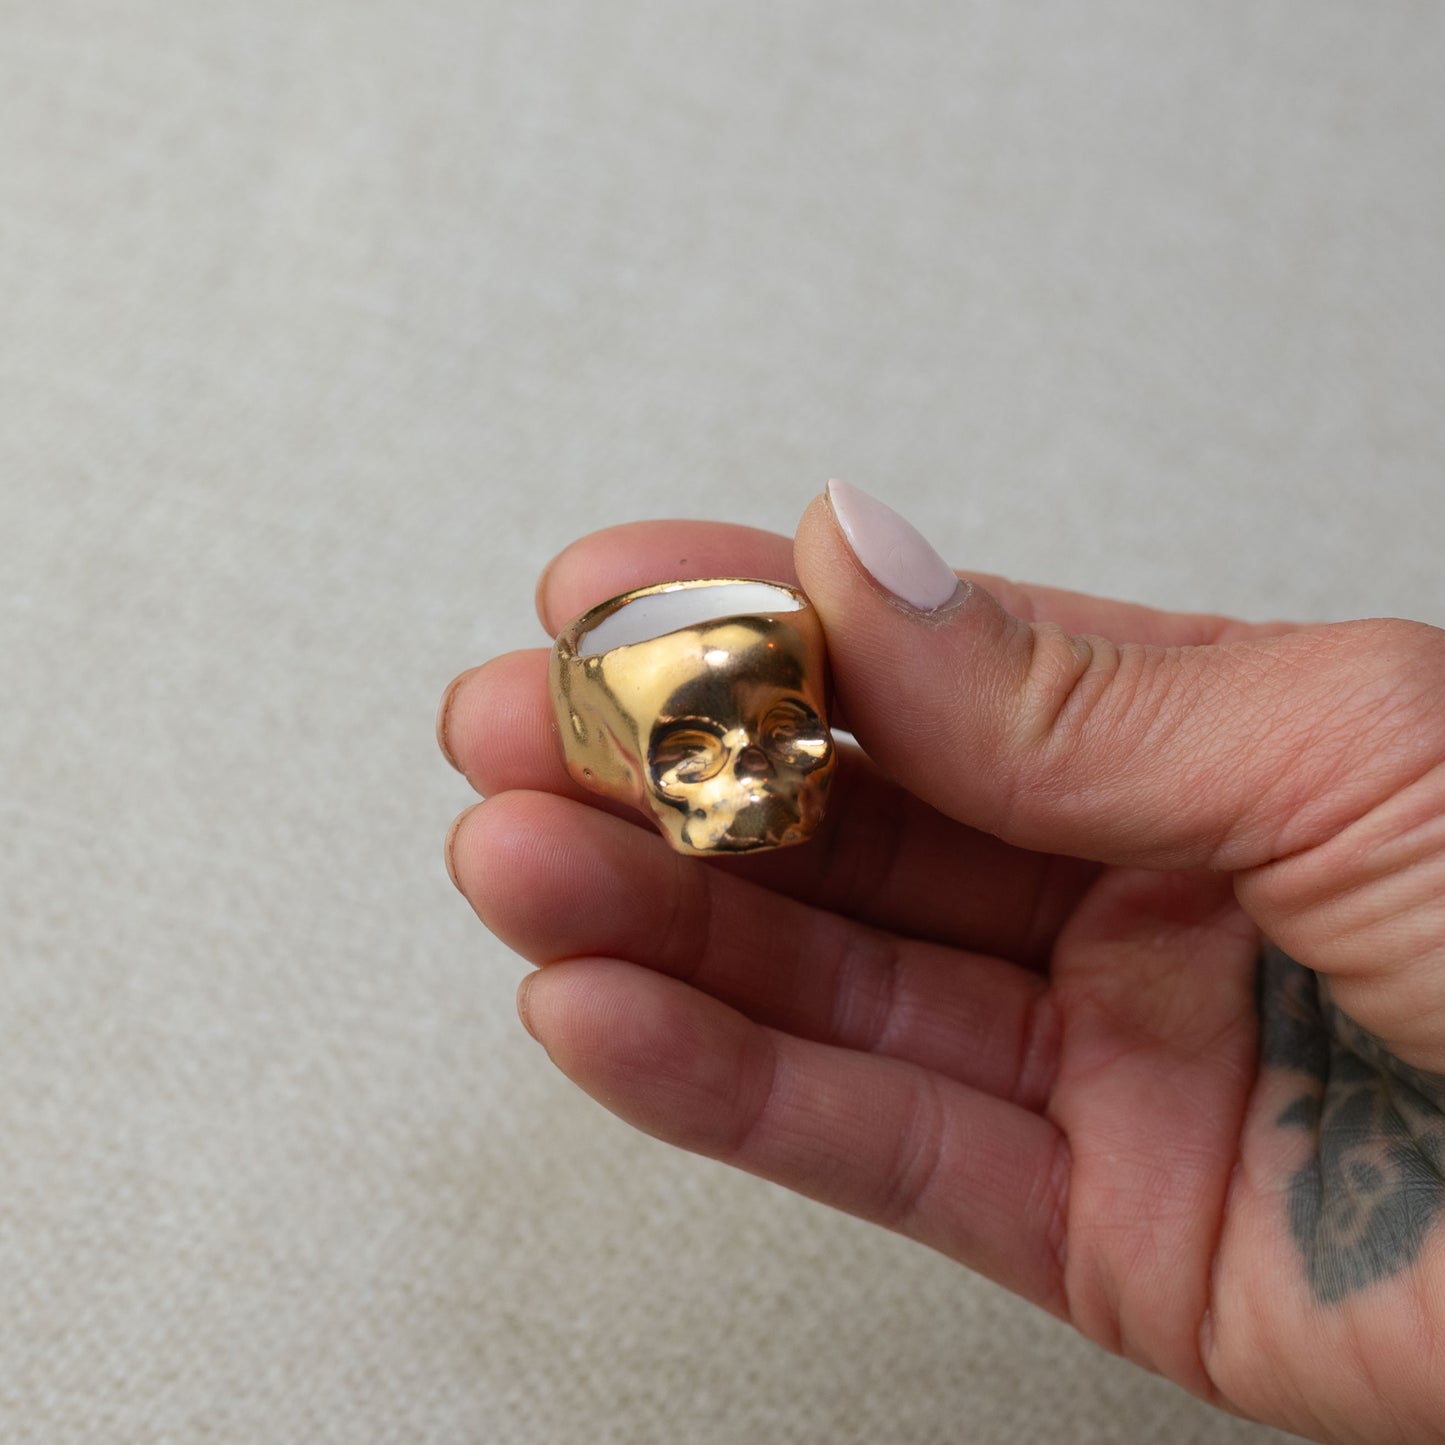 Gilded Porcelain Skull Ring - Yellow Gold